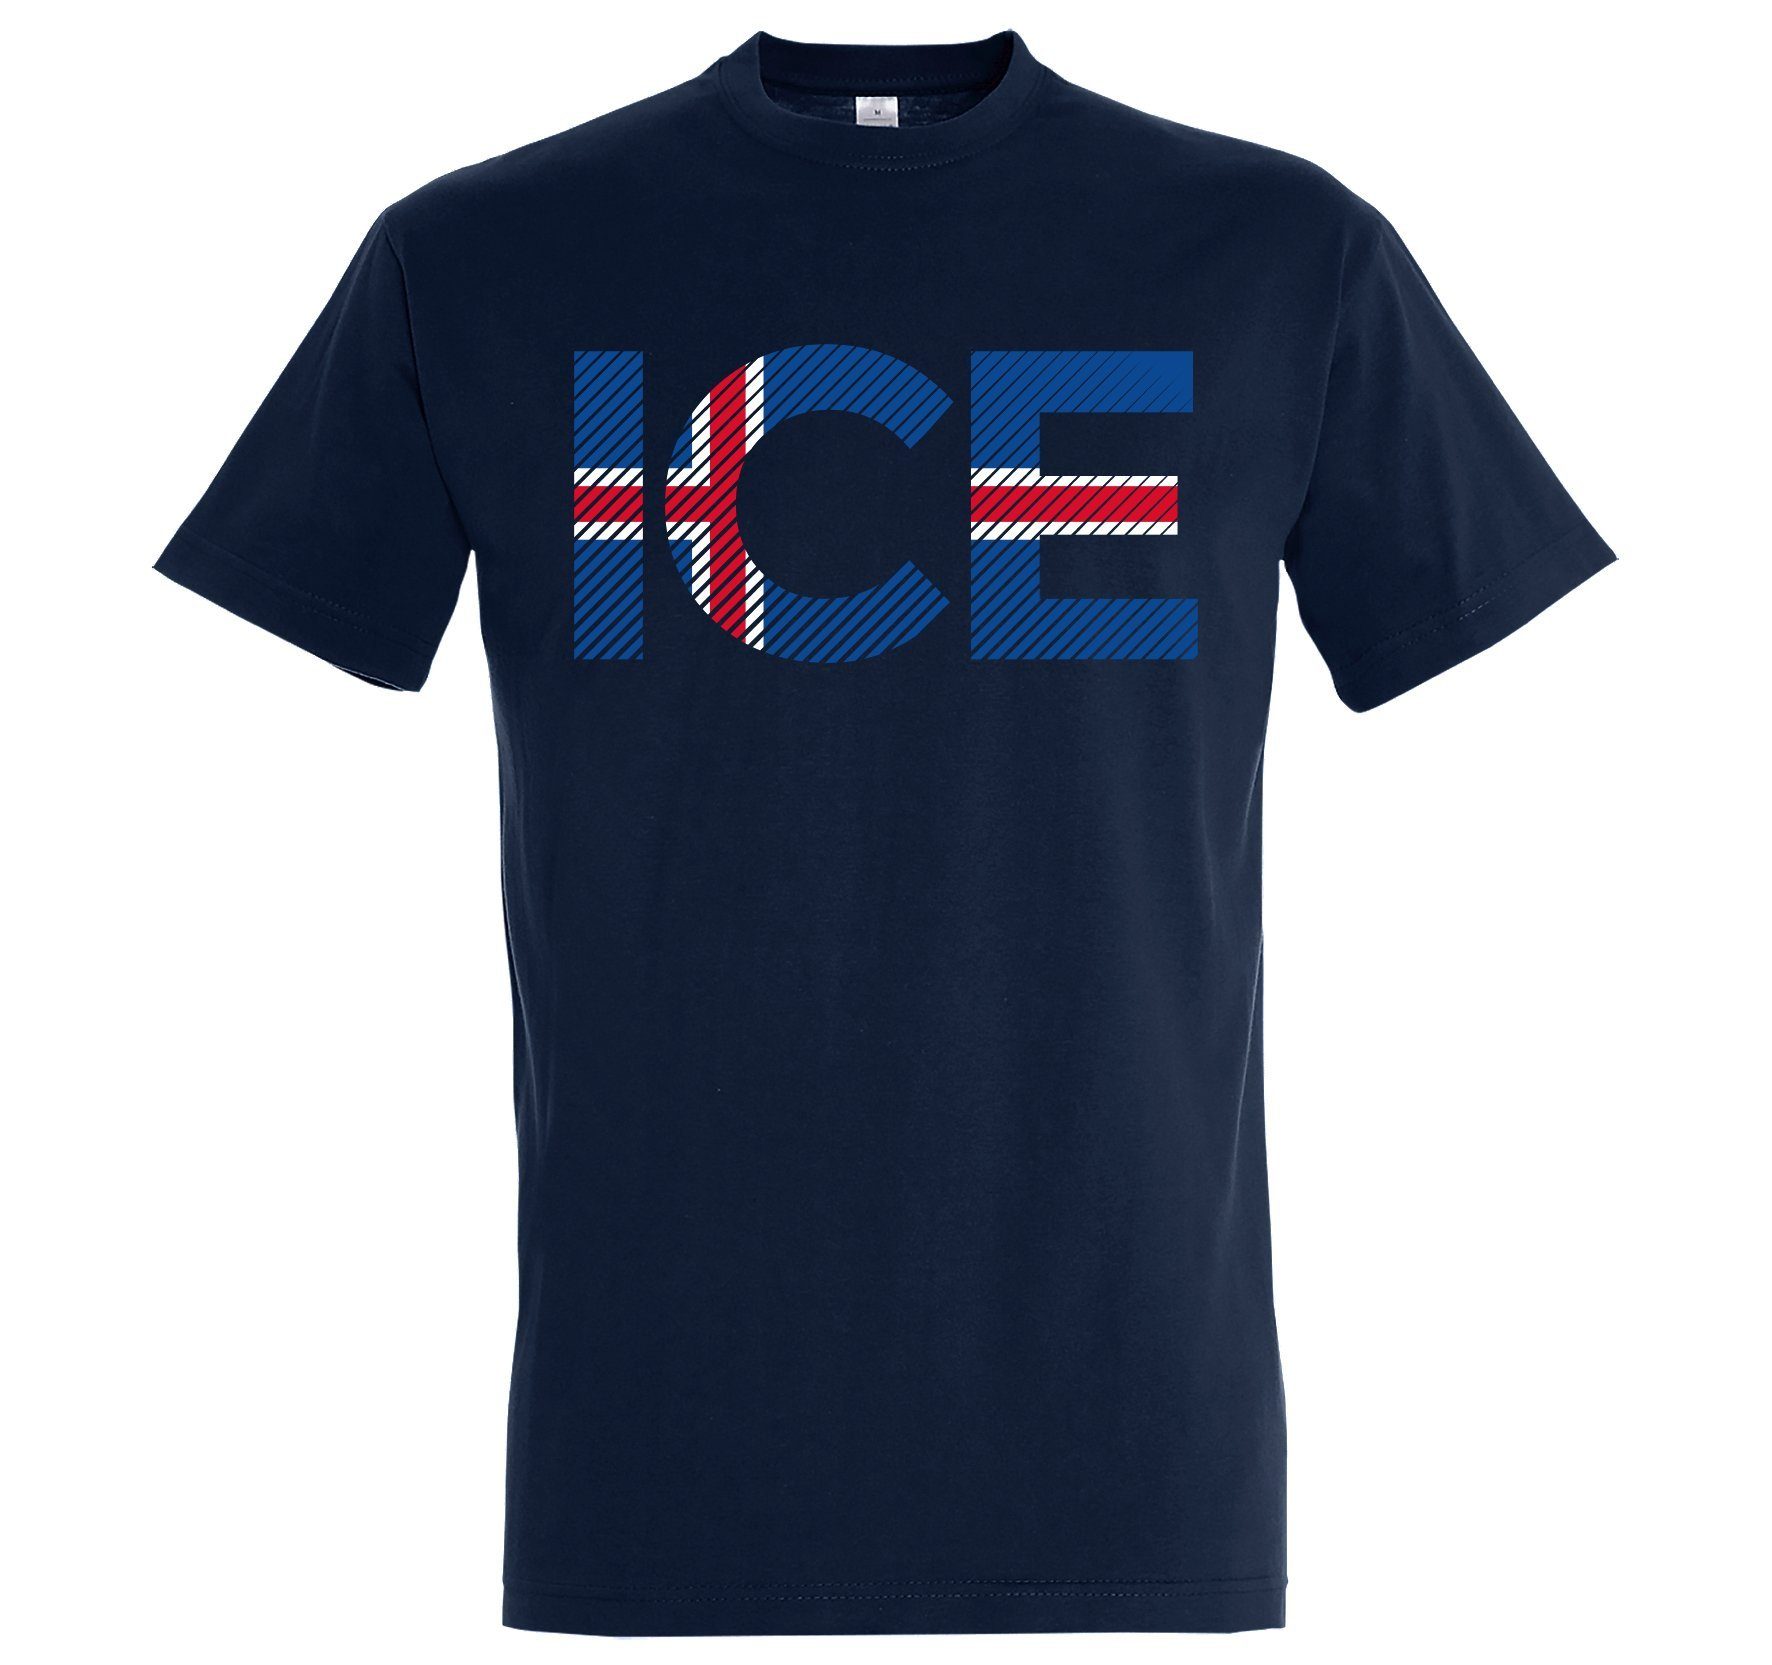 Höchste Qualität der Branche Youth Designz T-Shirt Iceland Herren Navy Fußball mit Look ICE T-Shirt Frontprint im